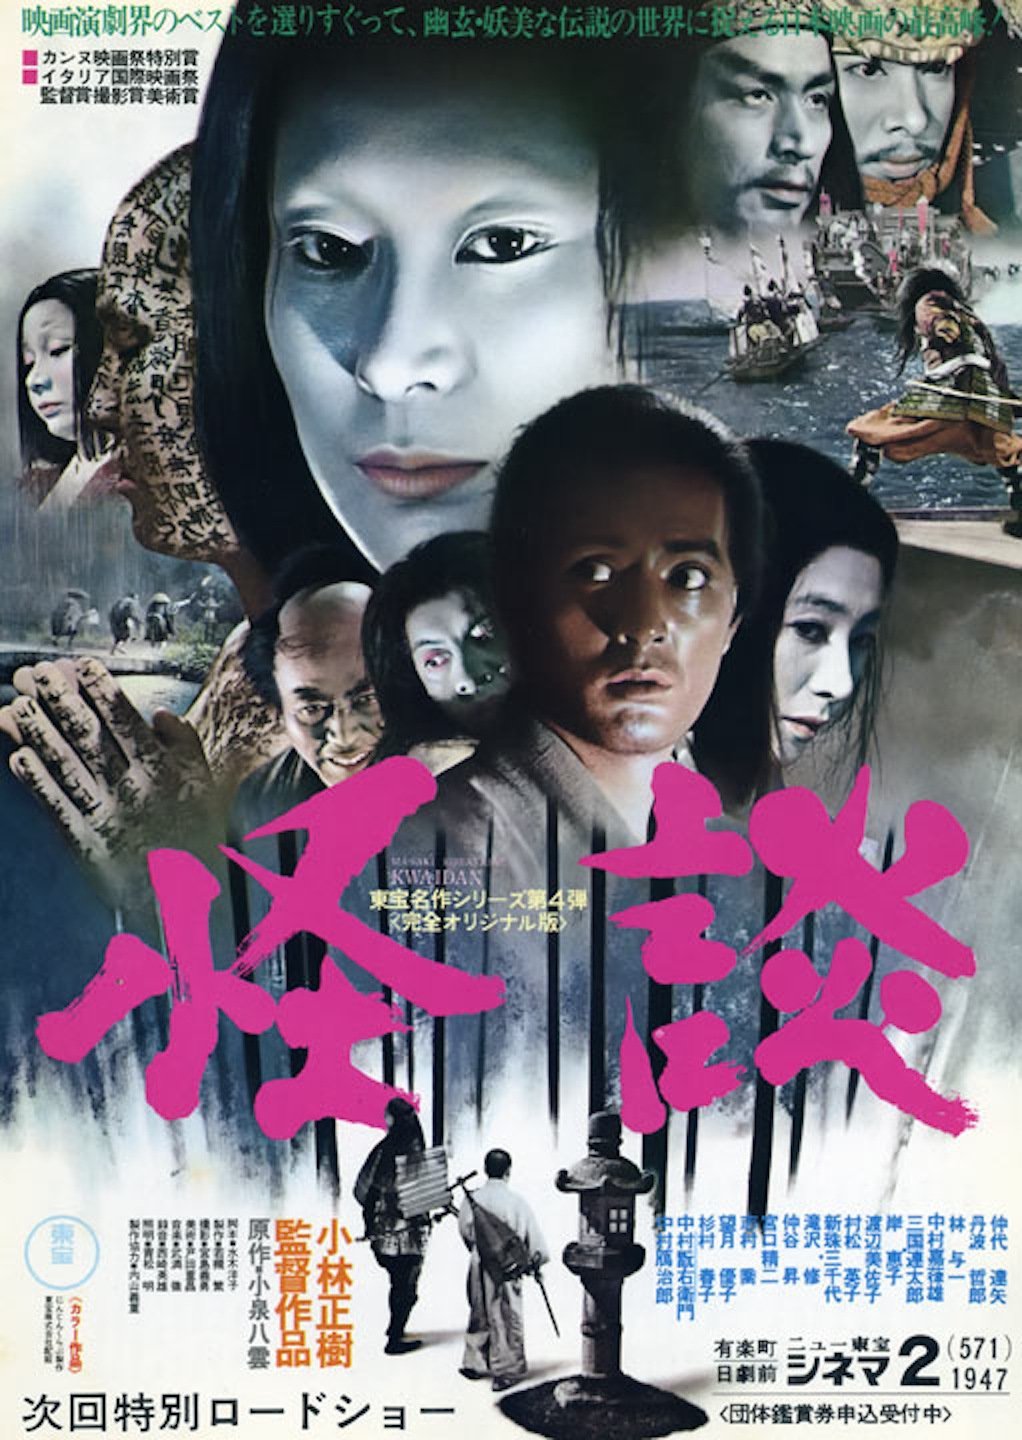 L'affiche originale du film Kwaidan en japonais